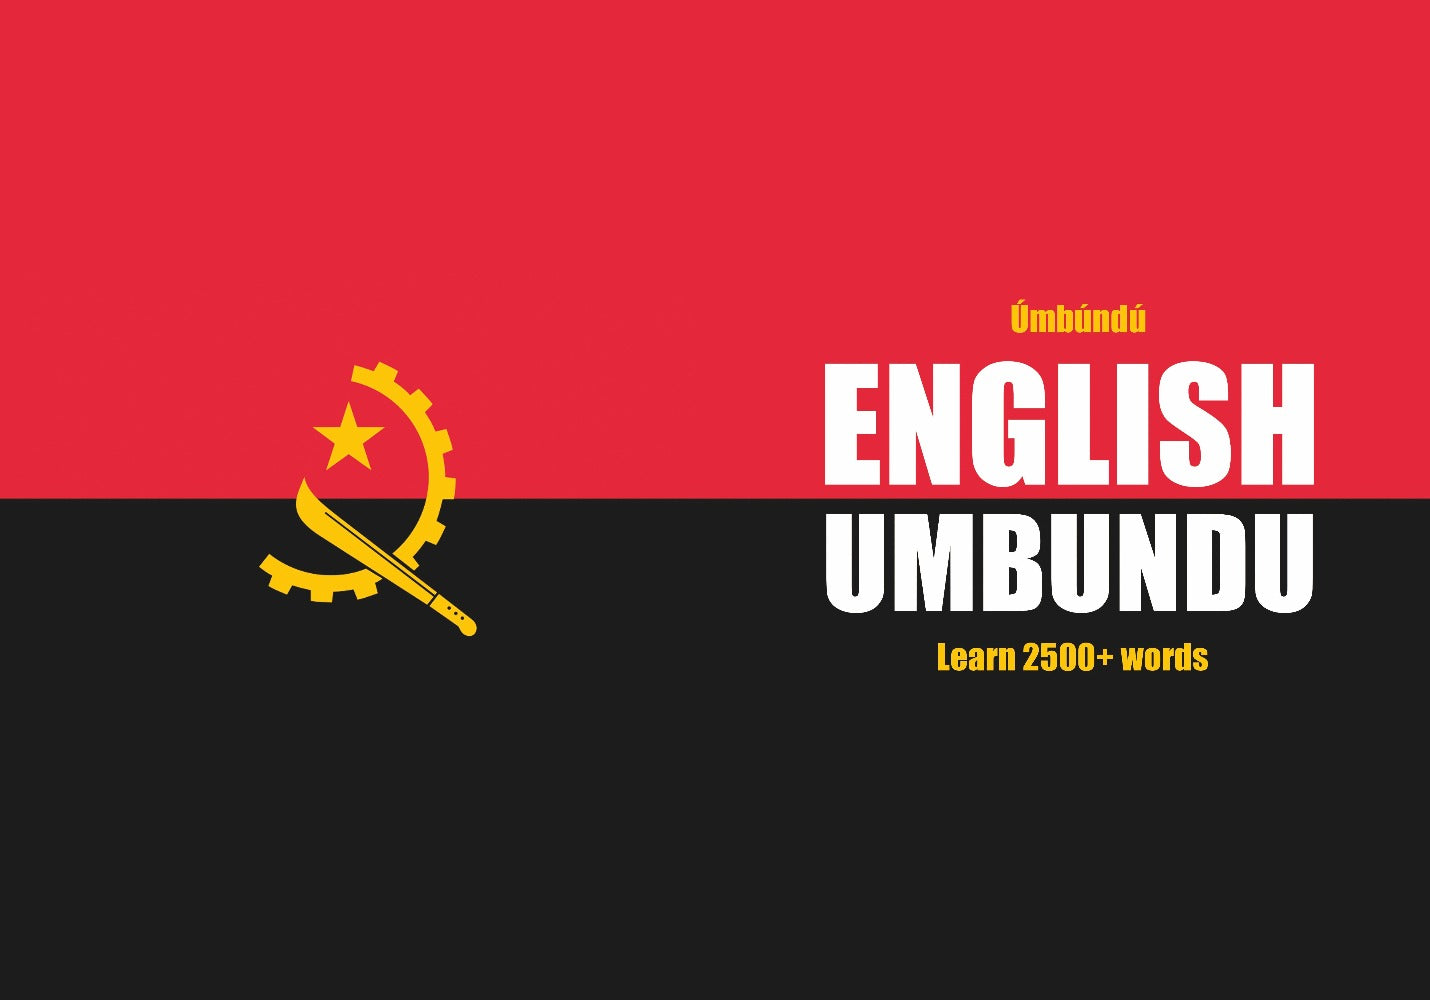 Umbundu language learning notebook cover